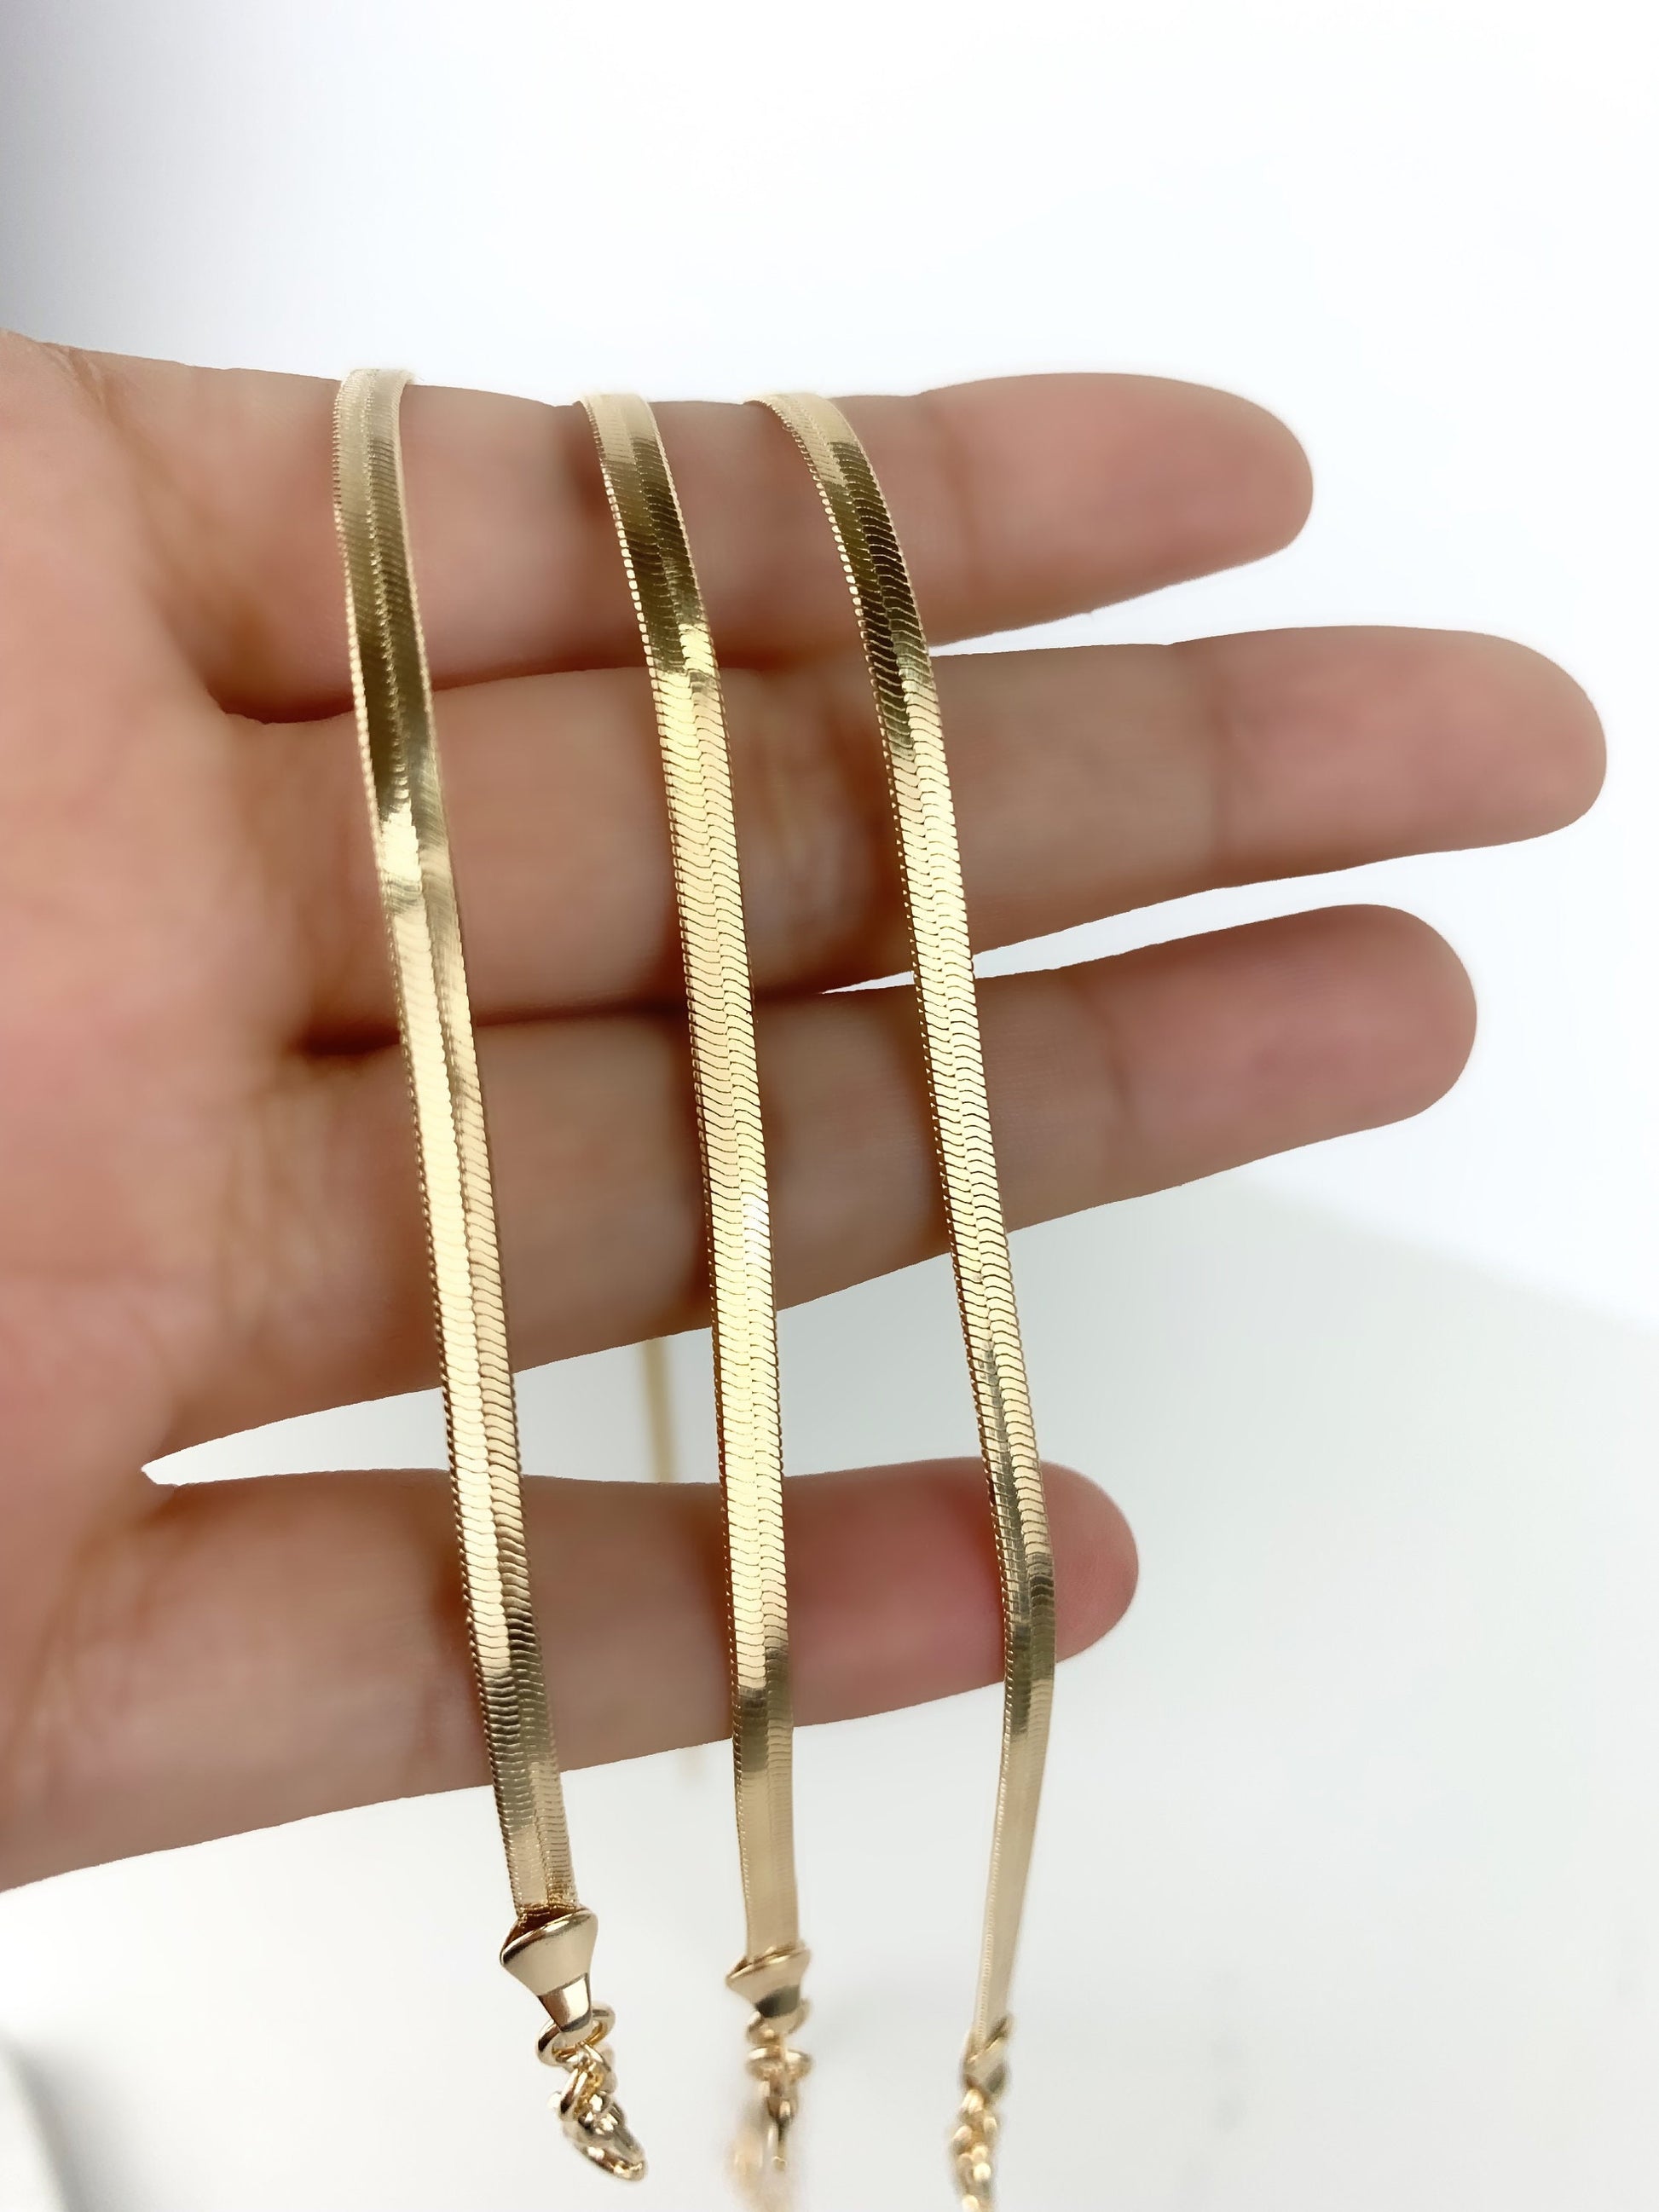 18k Gold Filled Fancy 3mm Herringbone, Snake Chain Bracelet Wholesale Jewelry Supplies